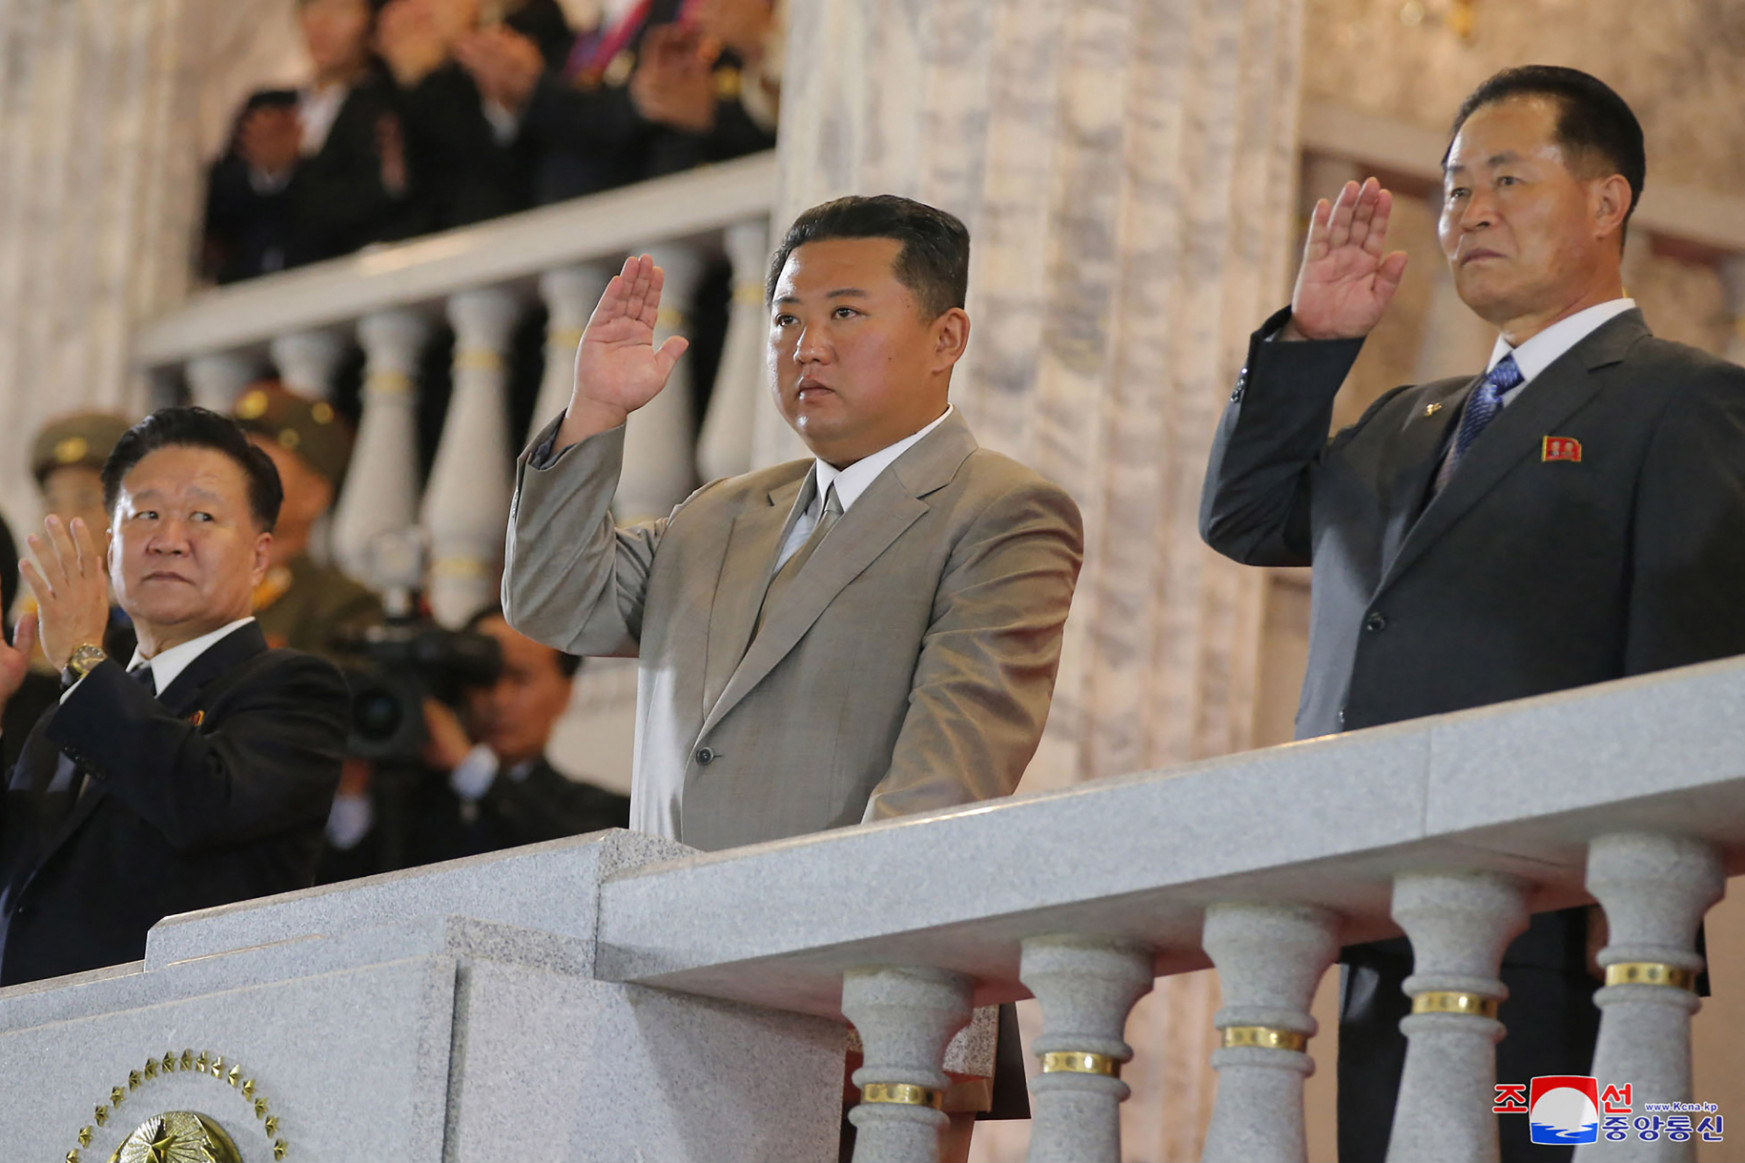 Éjféli katonai felvonulással ünnepelte alapításának 73. évfordulóját Észak-Korea